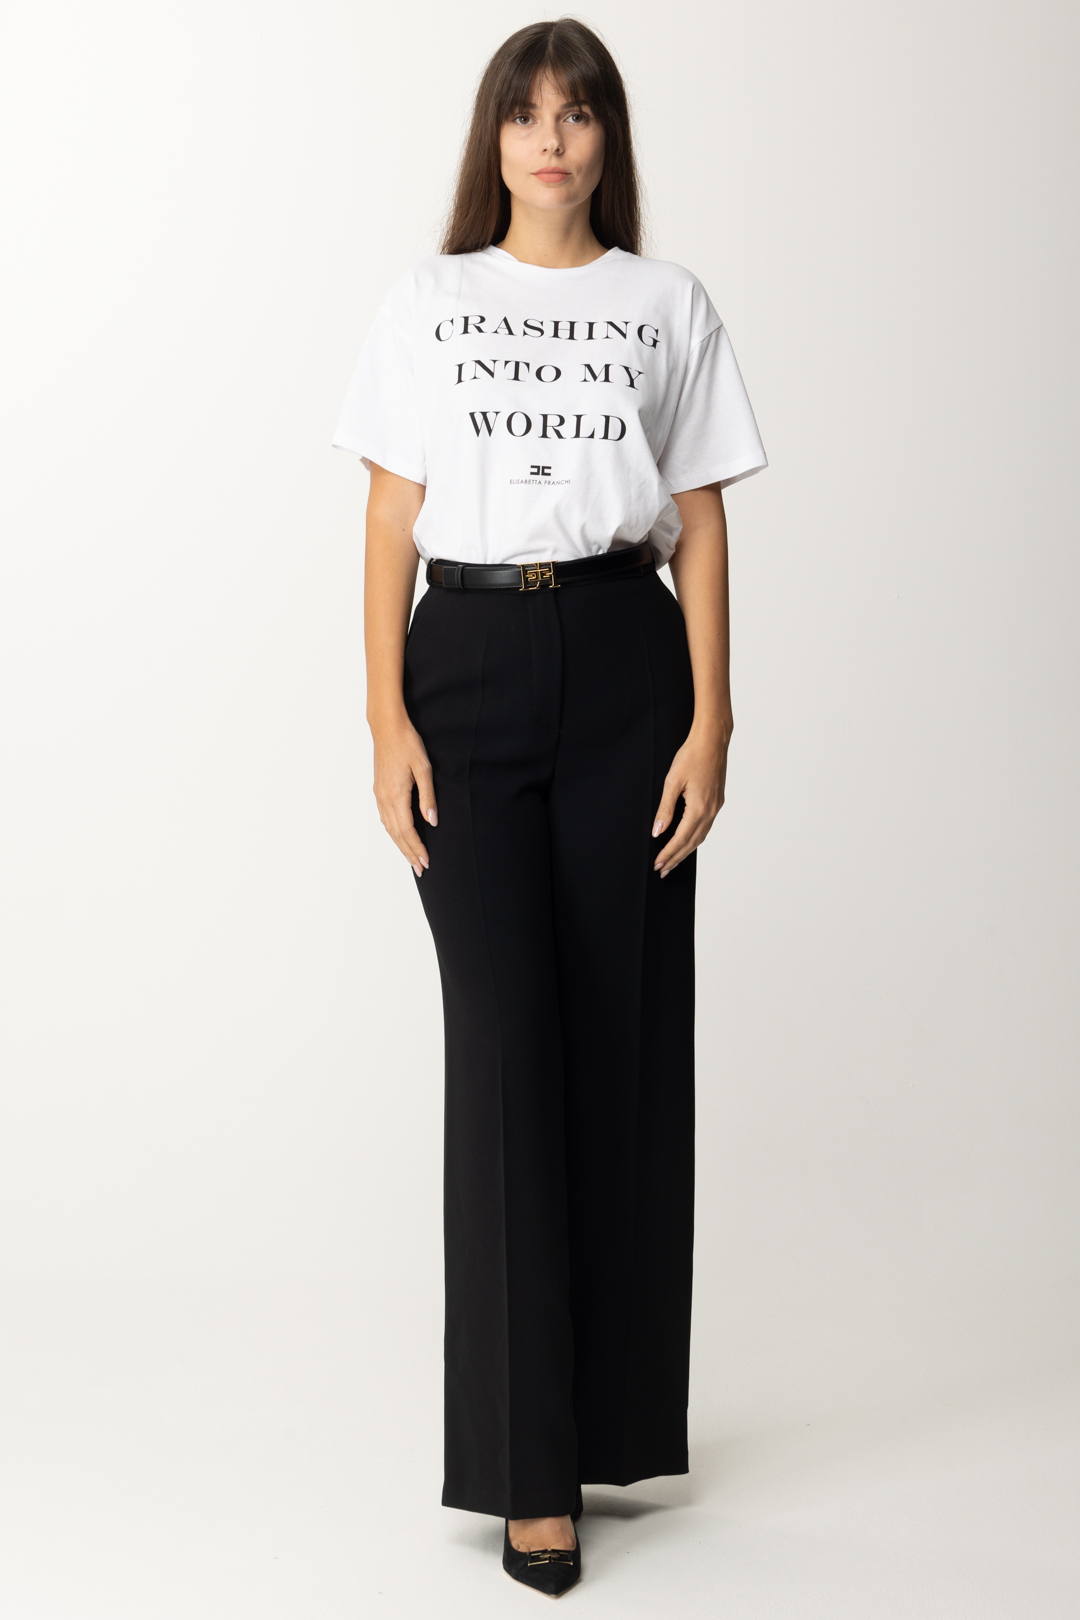 Aperçu: Elisabetta Franchi T-shirt oversize avec imprimé Gesso